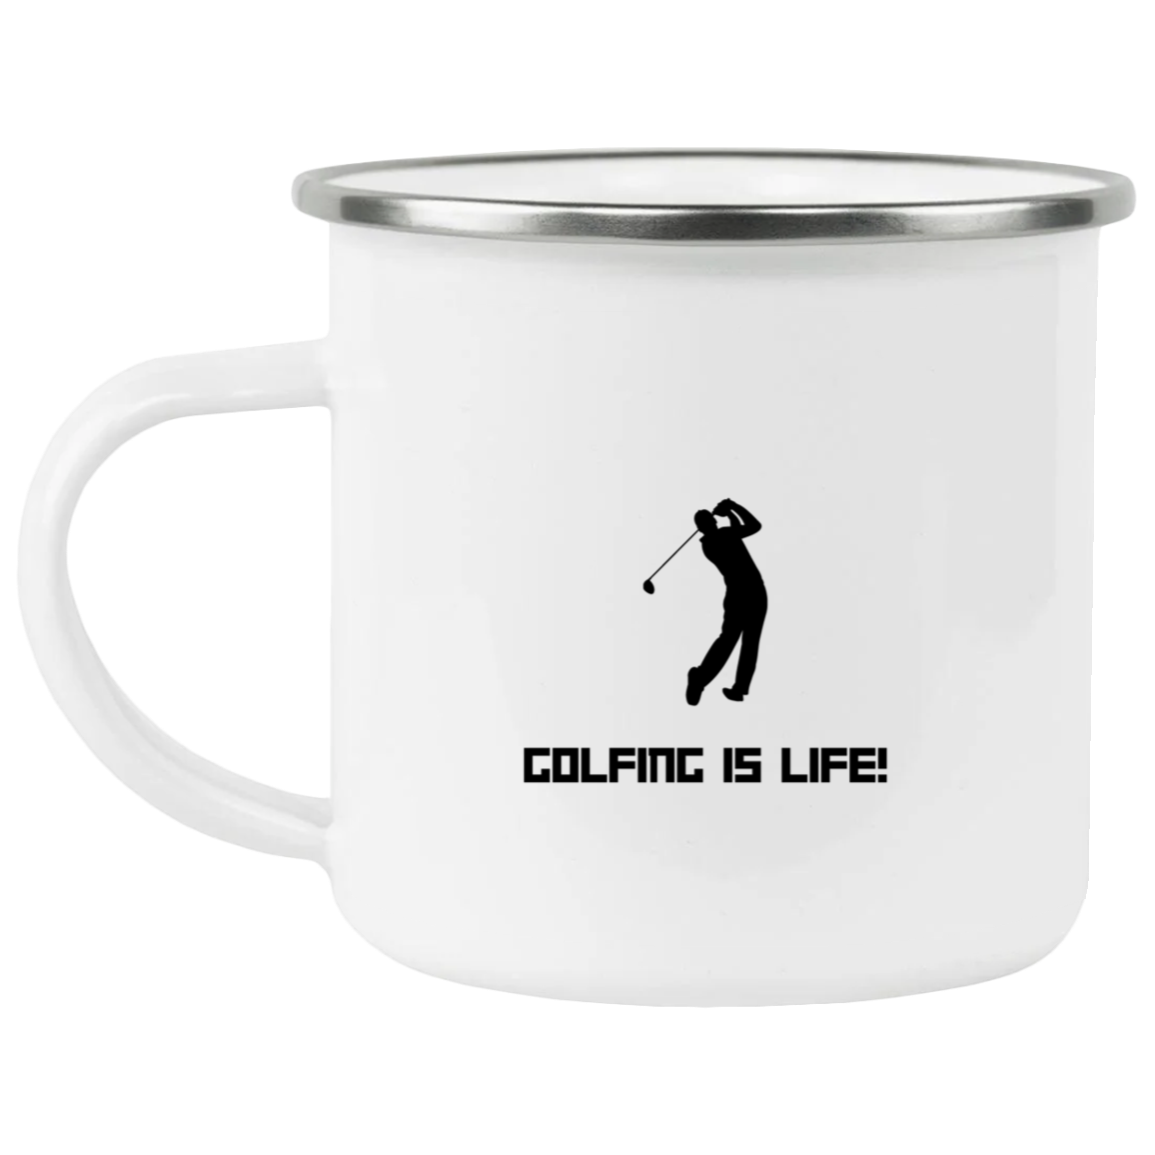 Golfing is life 21271 Enamel Camping Mug